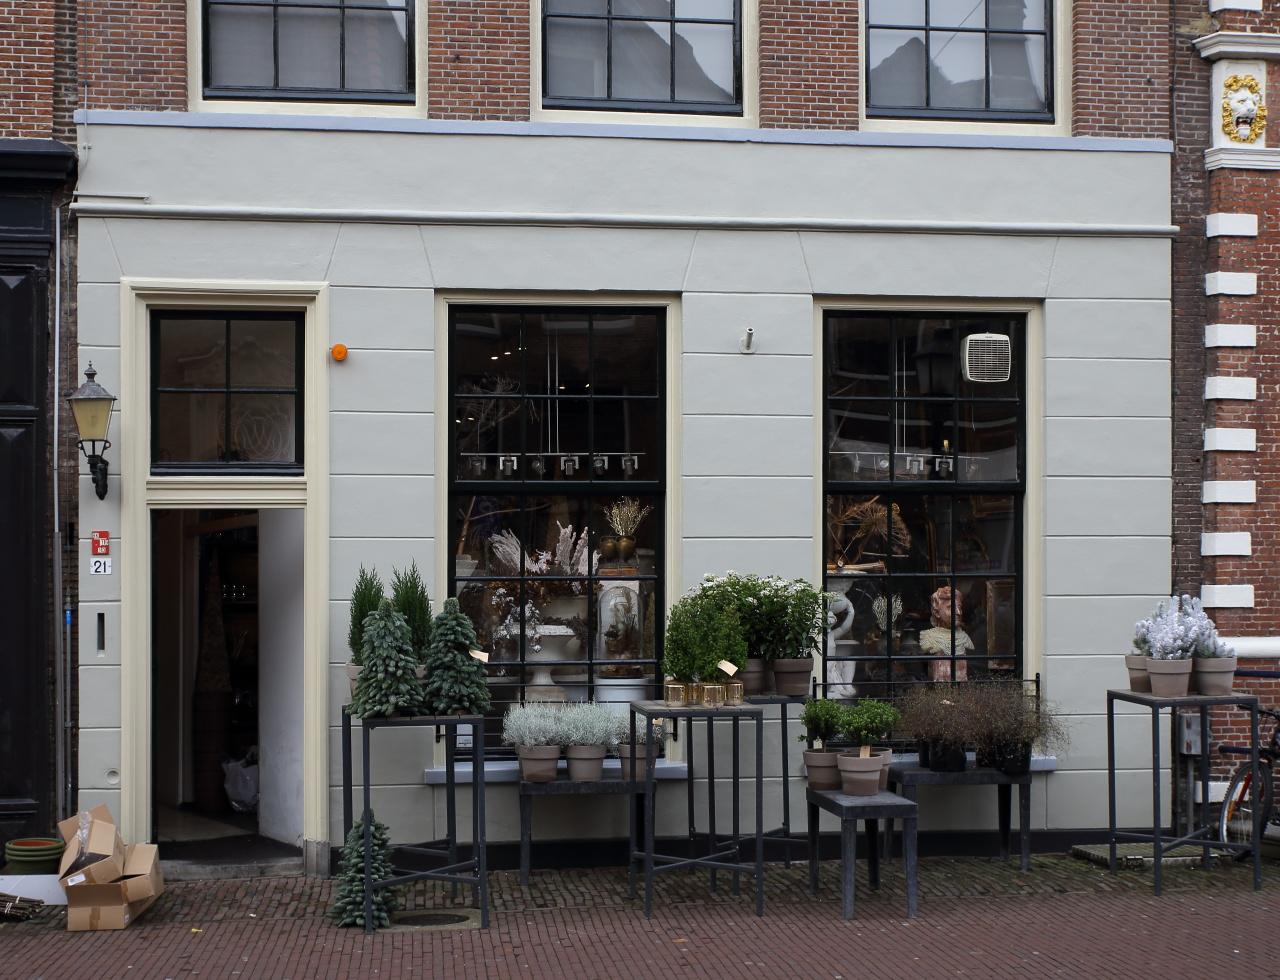 Foto Vok Jong in Hoorn, Winkelen, Wonen & koken - #4